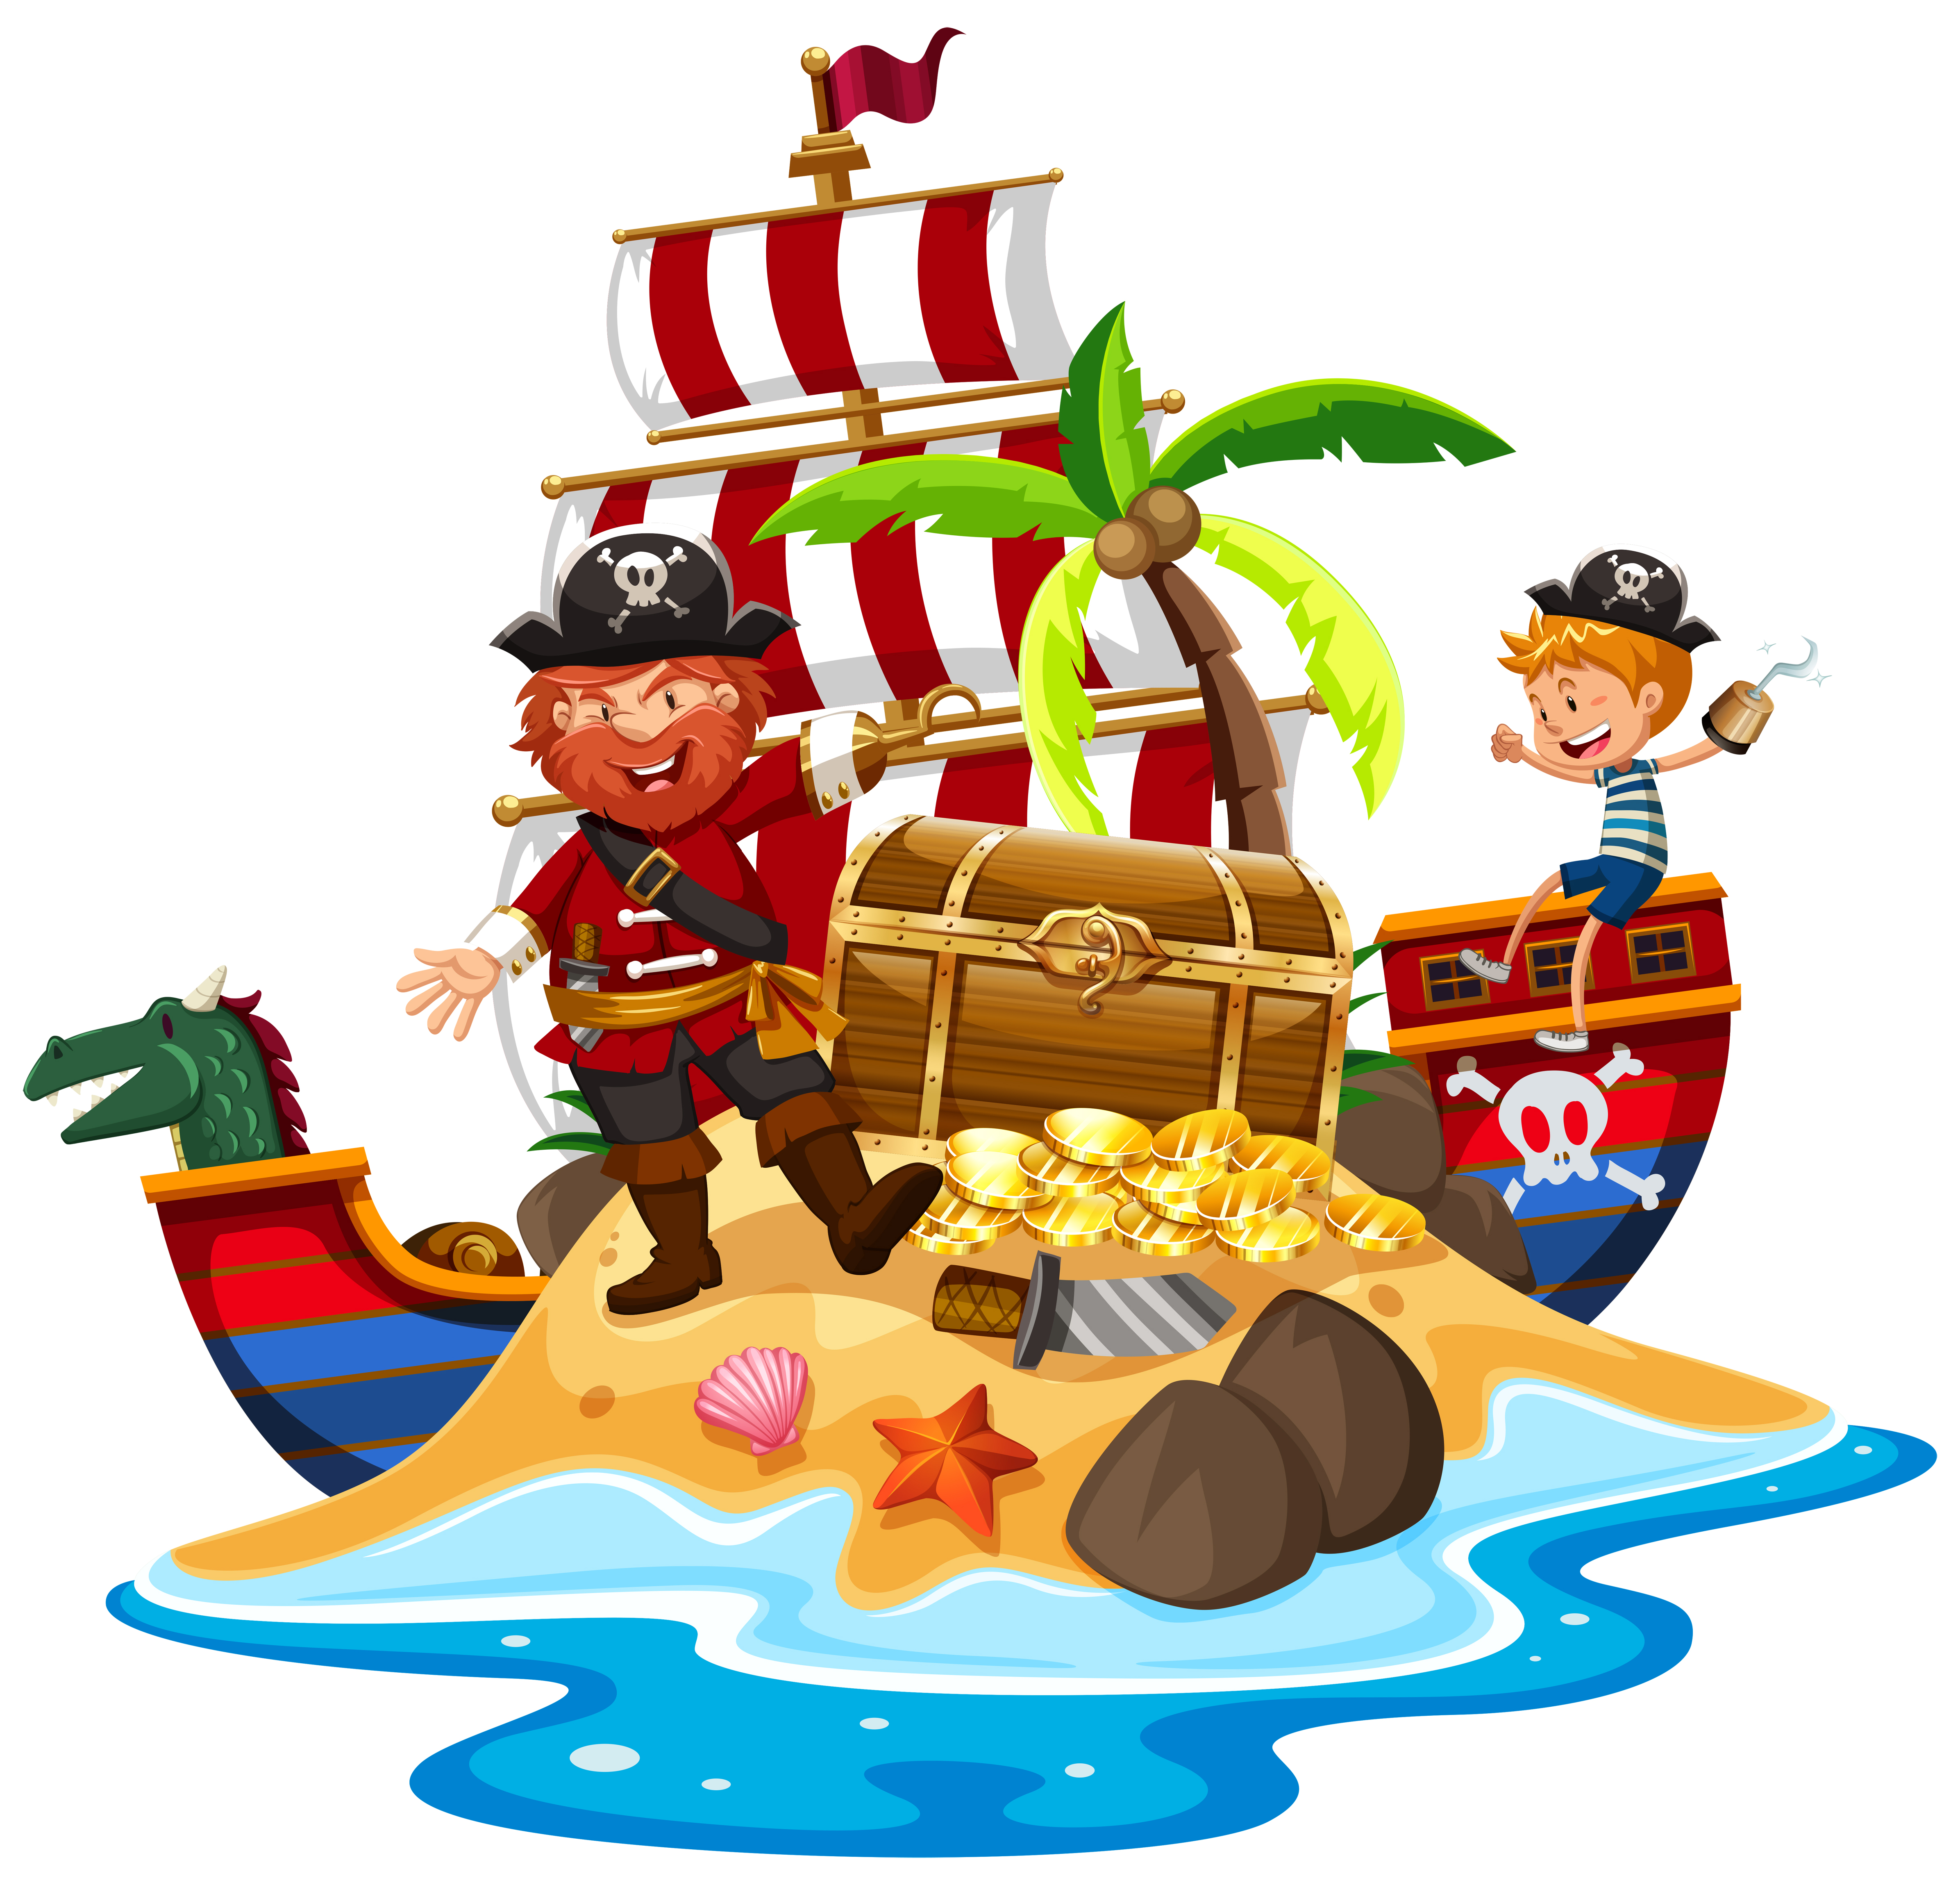 Pirate and ship at treasure island 431058 Vector Art at Vecteezy